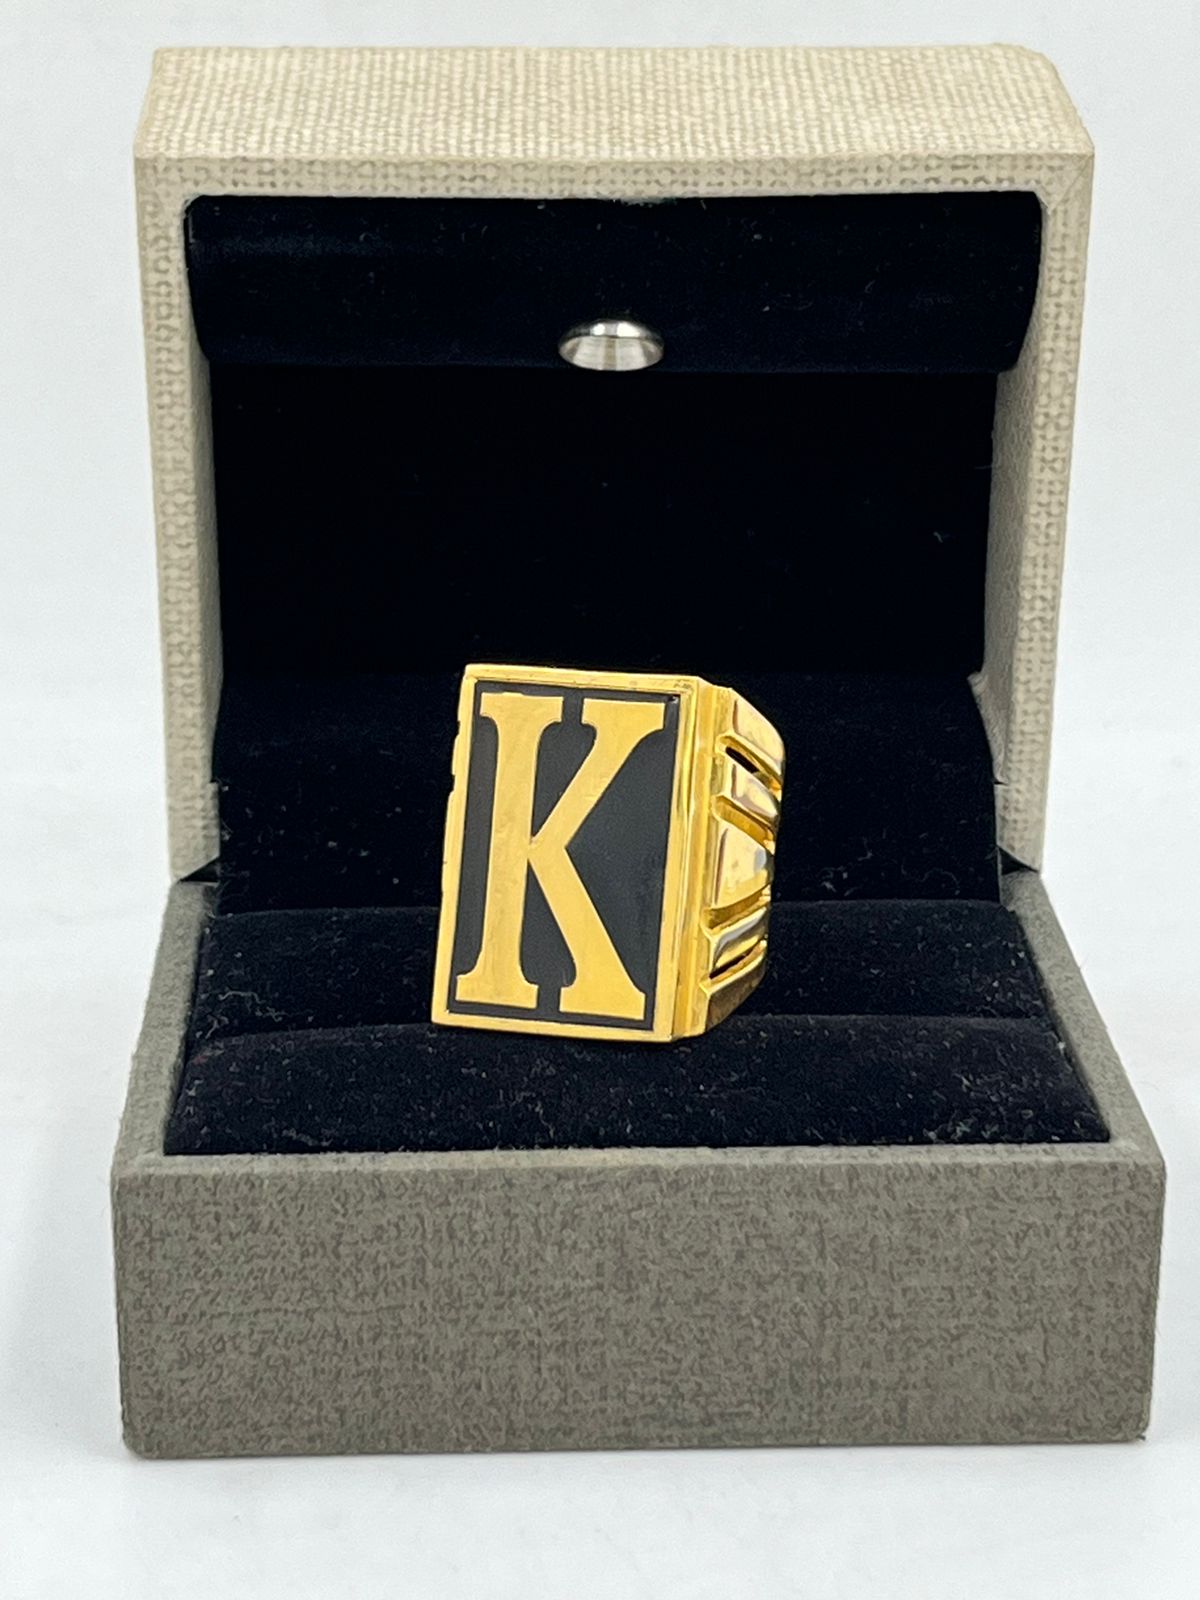 Buy Handmade 14K Gold Letter Ring, Dainty Custom Letter Ring, 14K Real Gold  Sparkly Letter Ring, Christmas Gift, Halloween Gold Ring Online in India -  Etsy